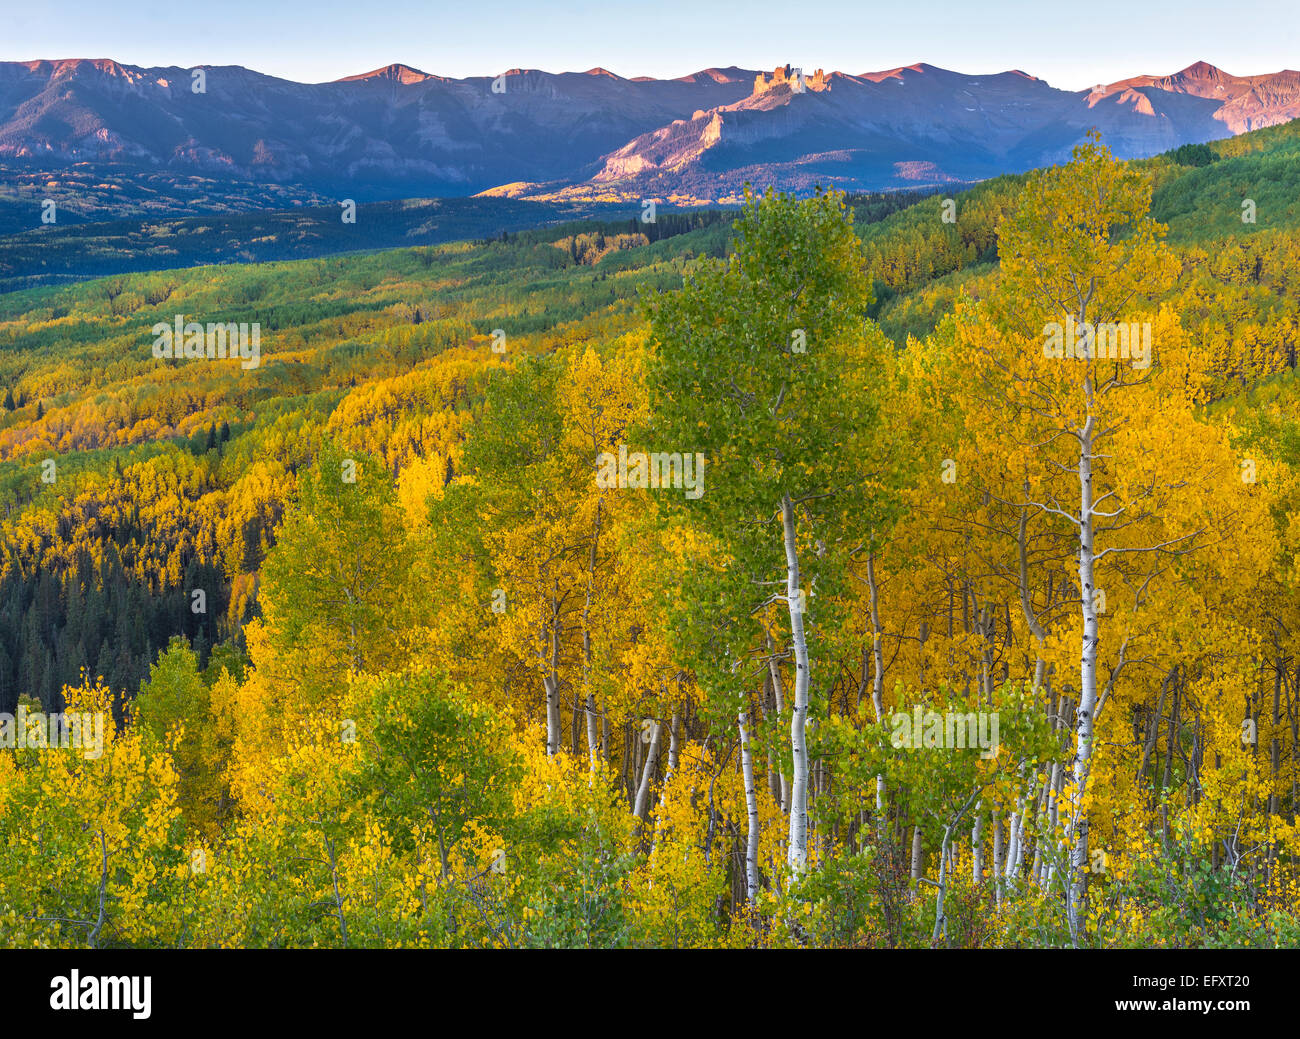 La Foresta Nazionale di Gunnison, Colorado: Su vista dall'Ohio Pass con aspen (Populus tremuloides) oliveti in autunno a colori Foto Stock